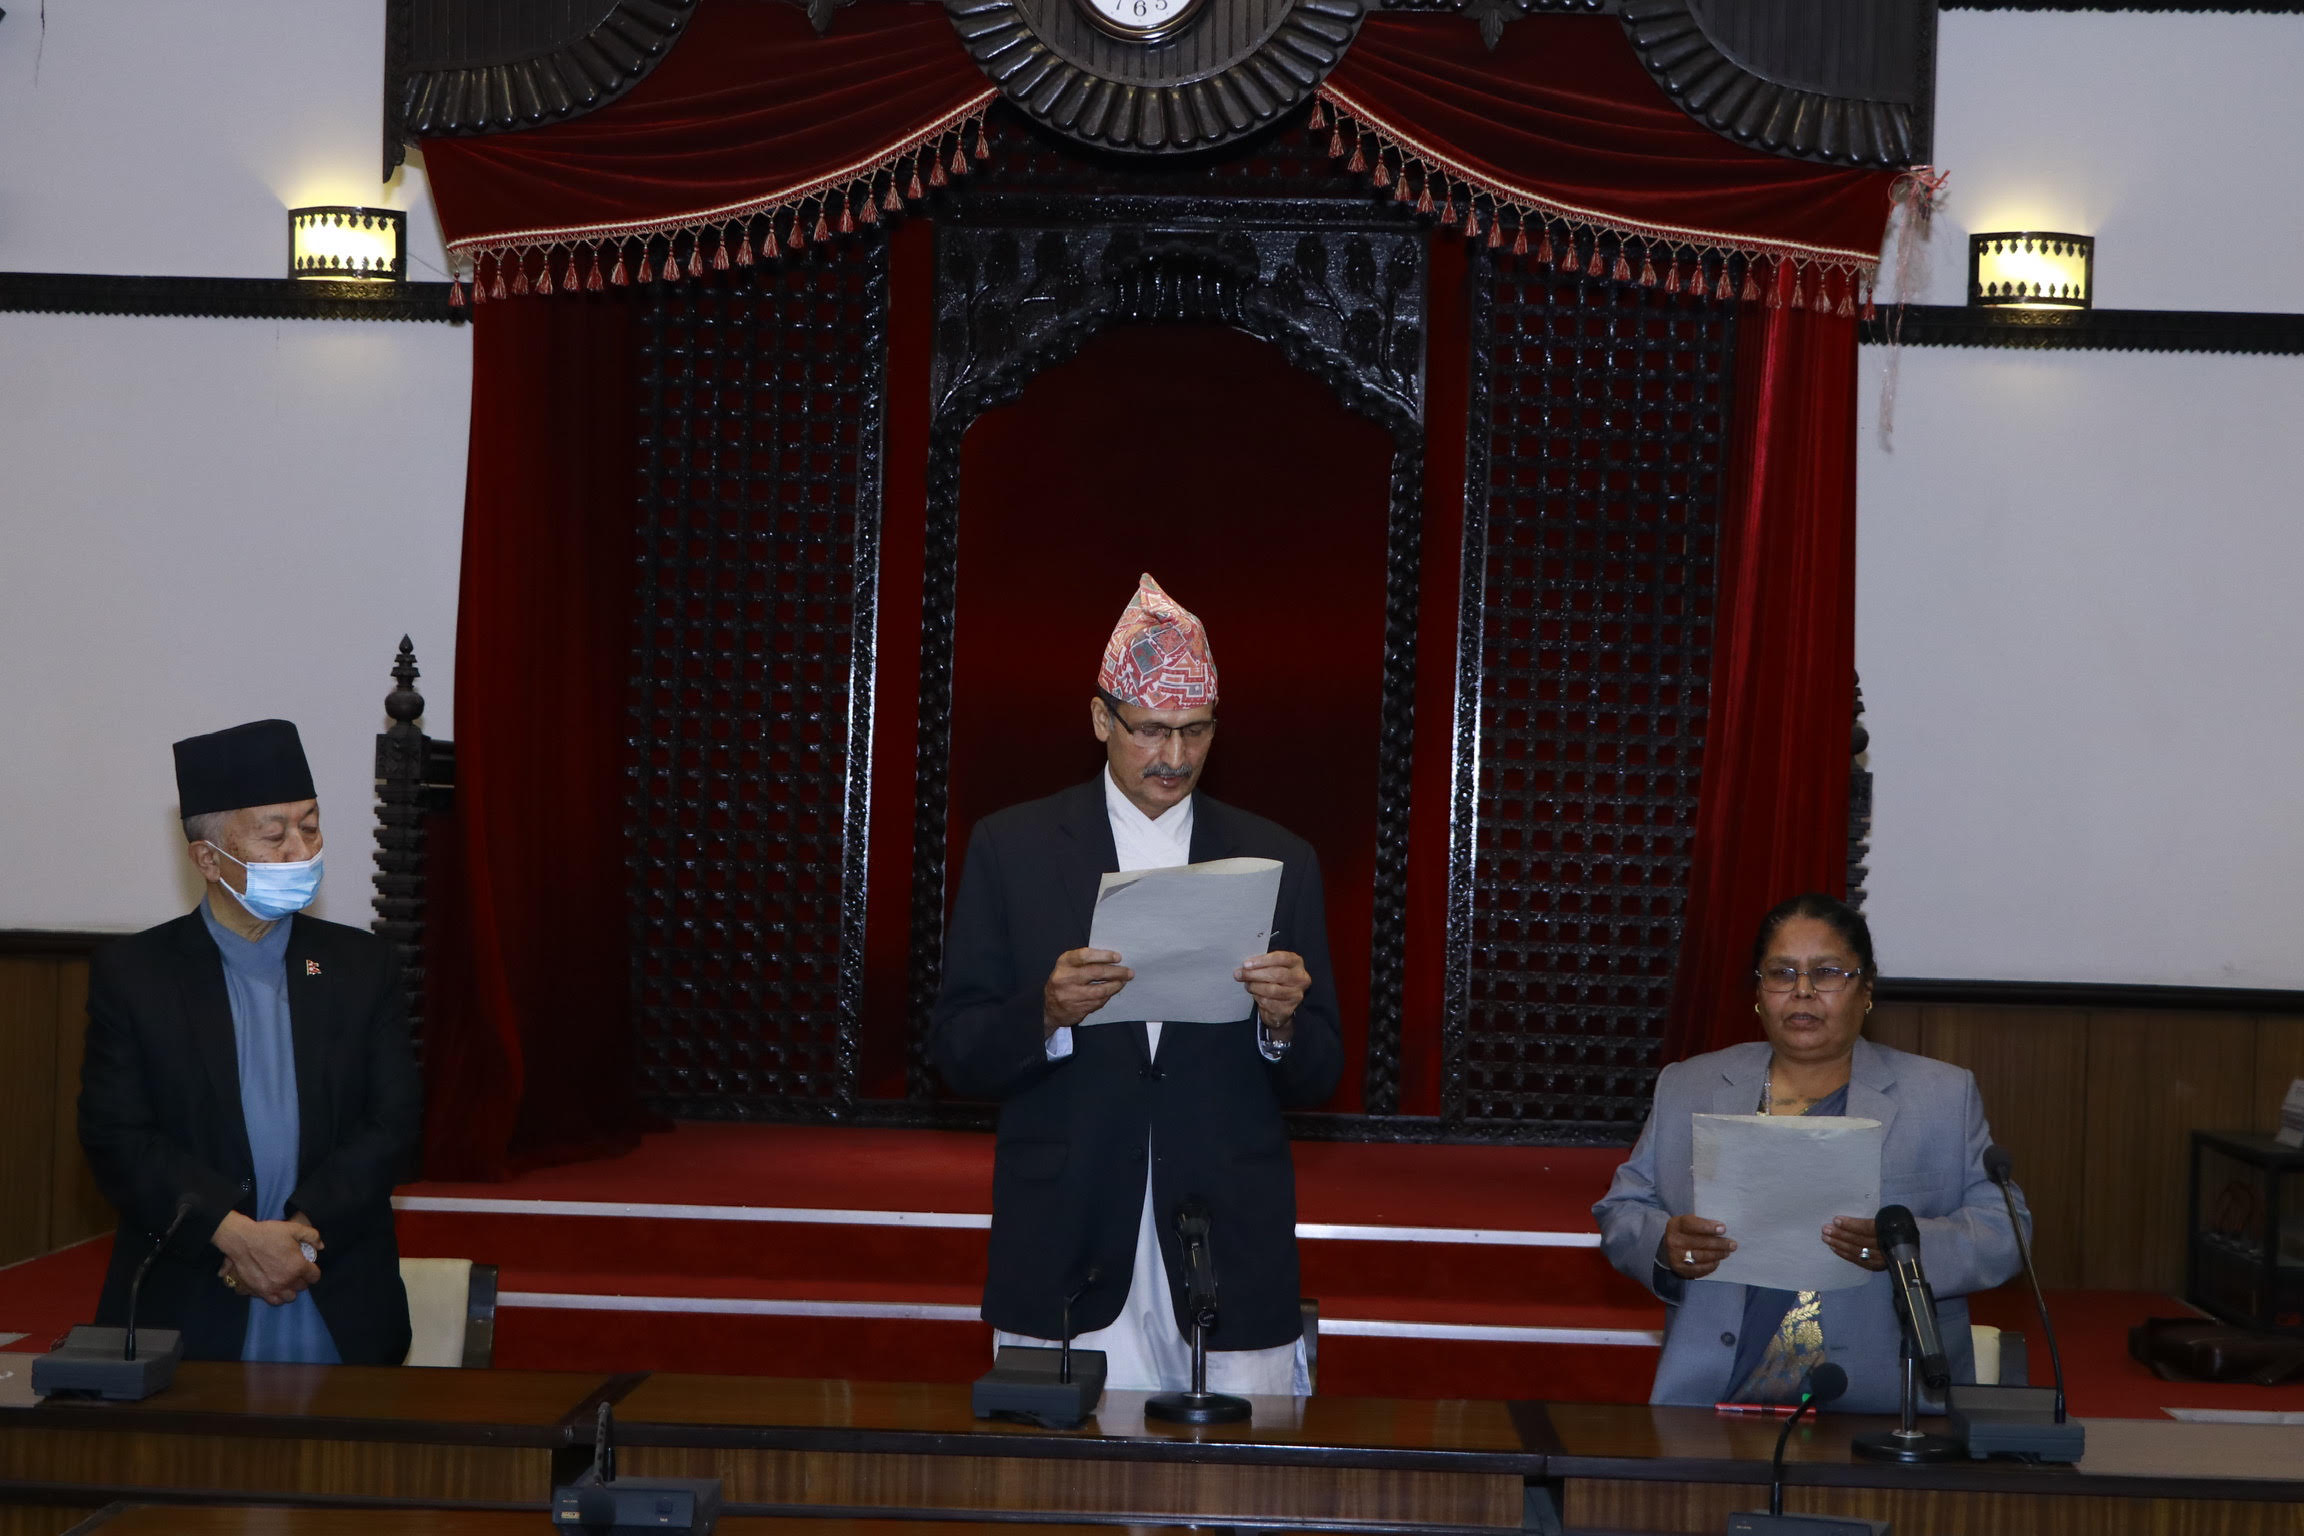 speaker-administers-oath-to-hor-member-janaki-devi